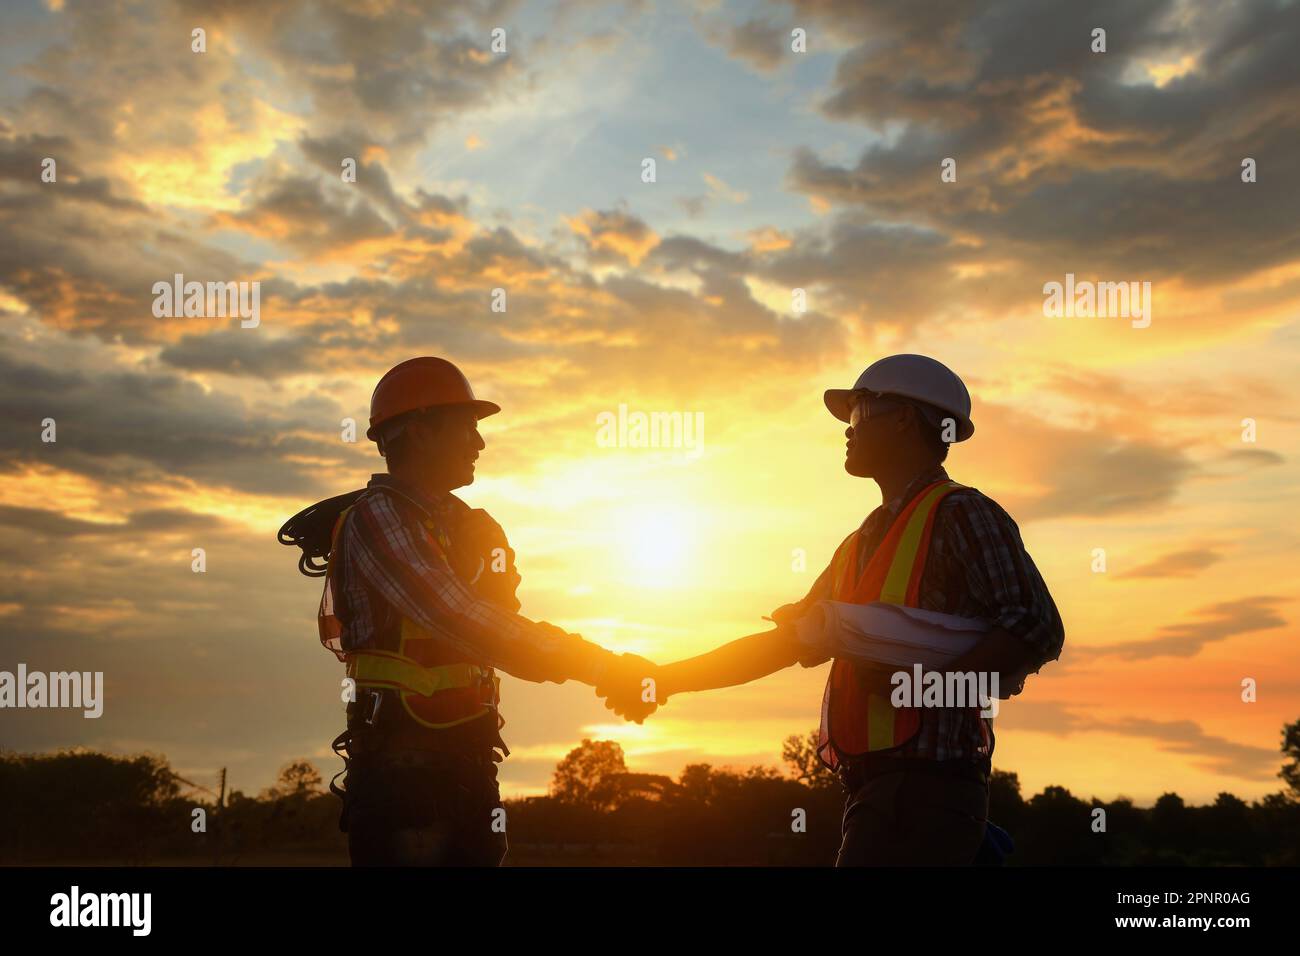 Silhouette von zwei Ingenieuren auf einer Baustelle, die bei Sonnenuntergang in Thailand die Hand schütteln Stockfoto